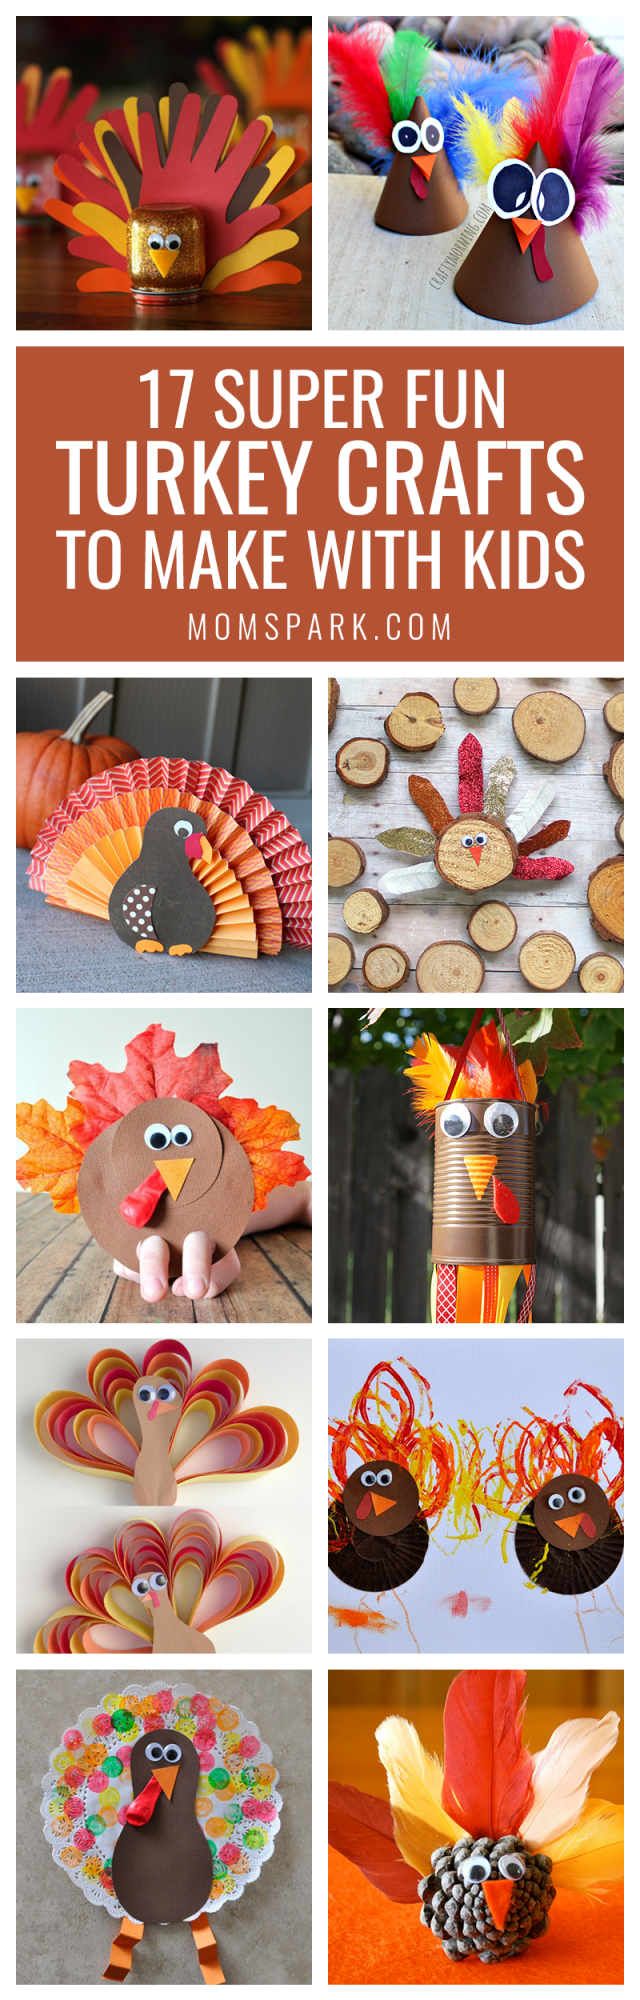 17 Turkey Crafts to Make with Kids